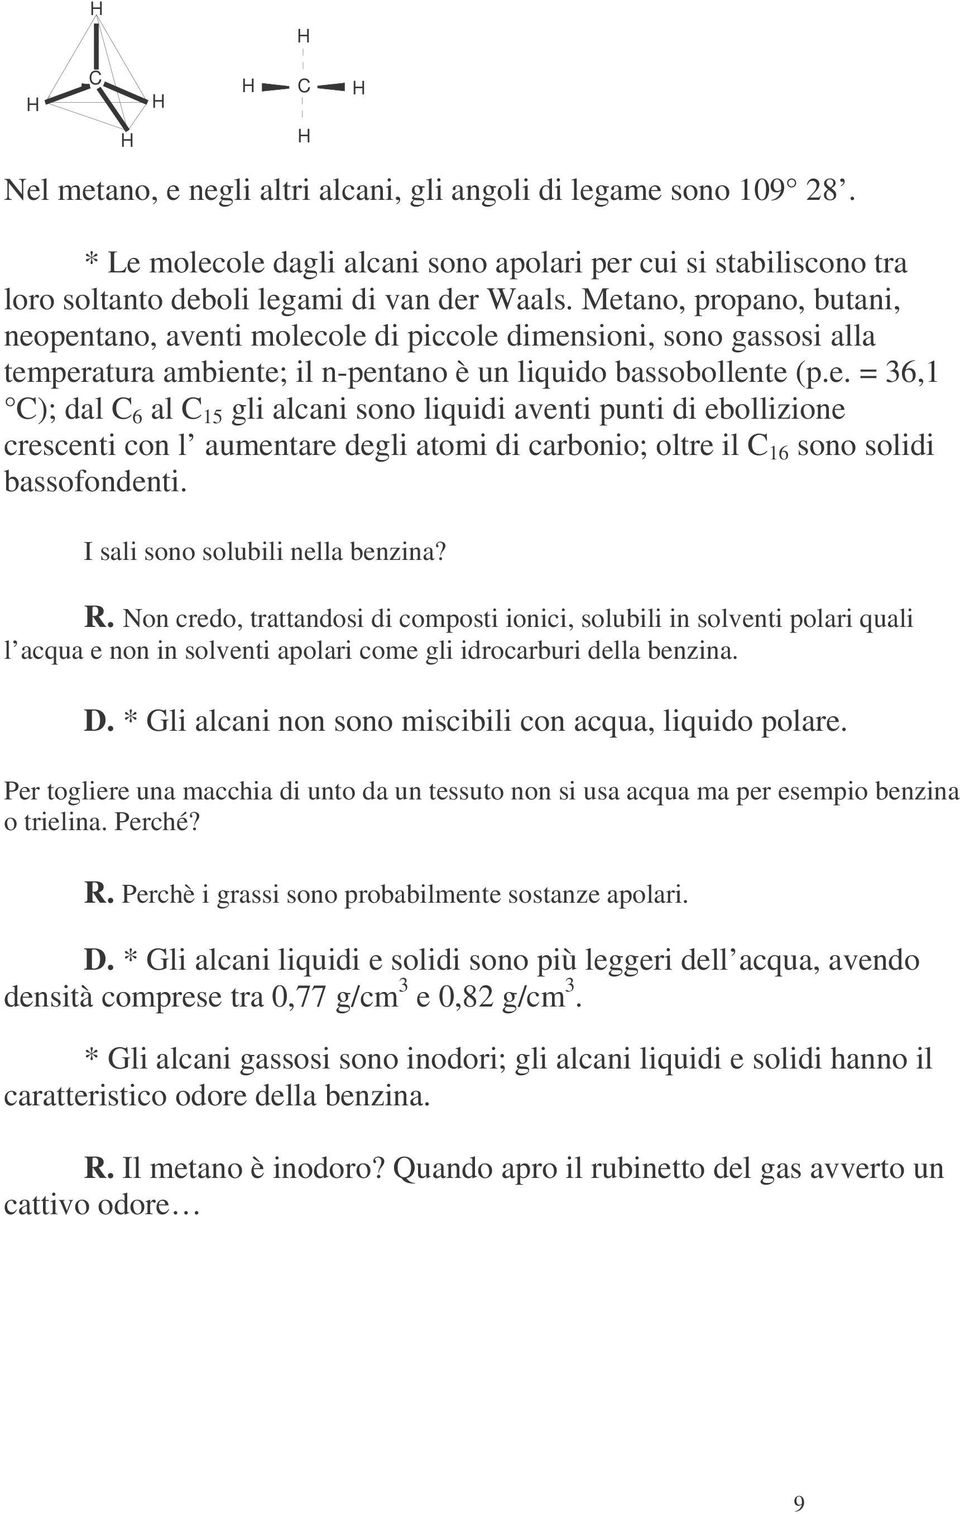 I sali sono solubili nella benzina? R. Non credo, trattandosi di composti ionici, solubili in solventi polari quali l acqua e non in solventi apolari come gli idrocarburi della benzina. D.